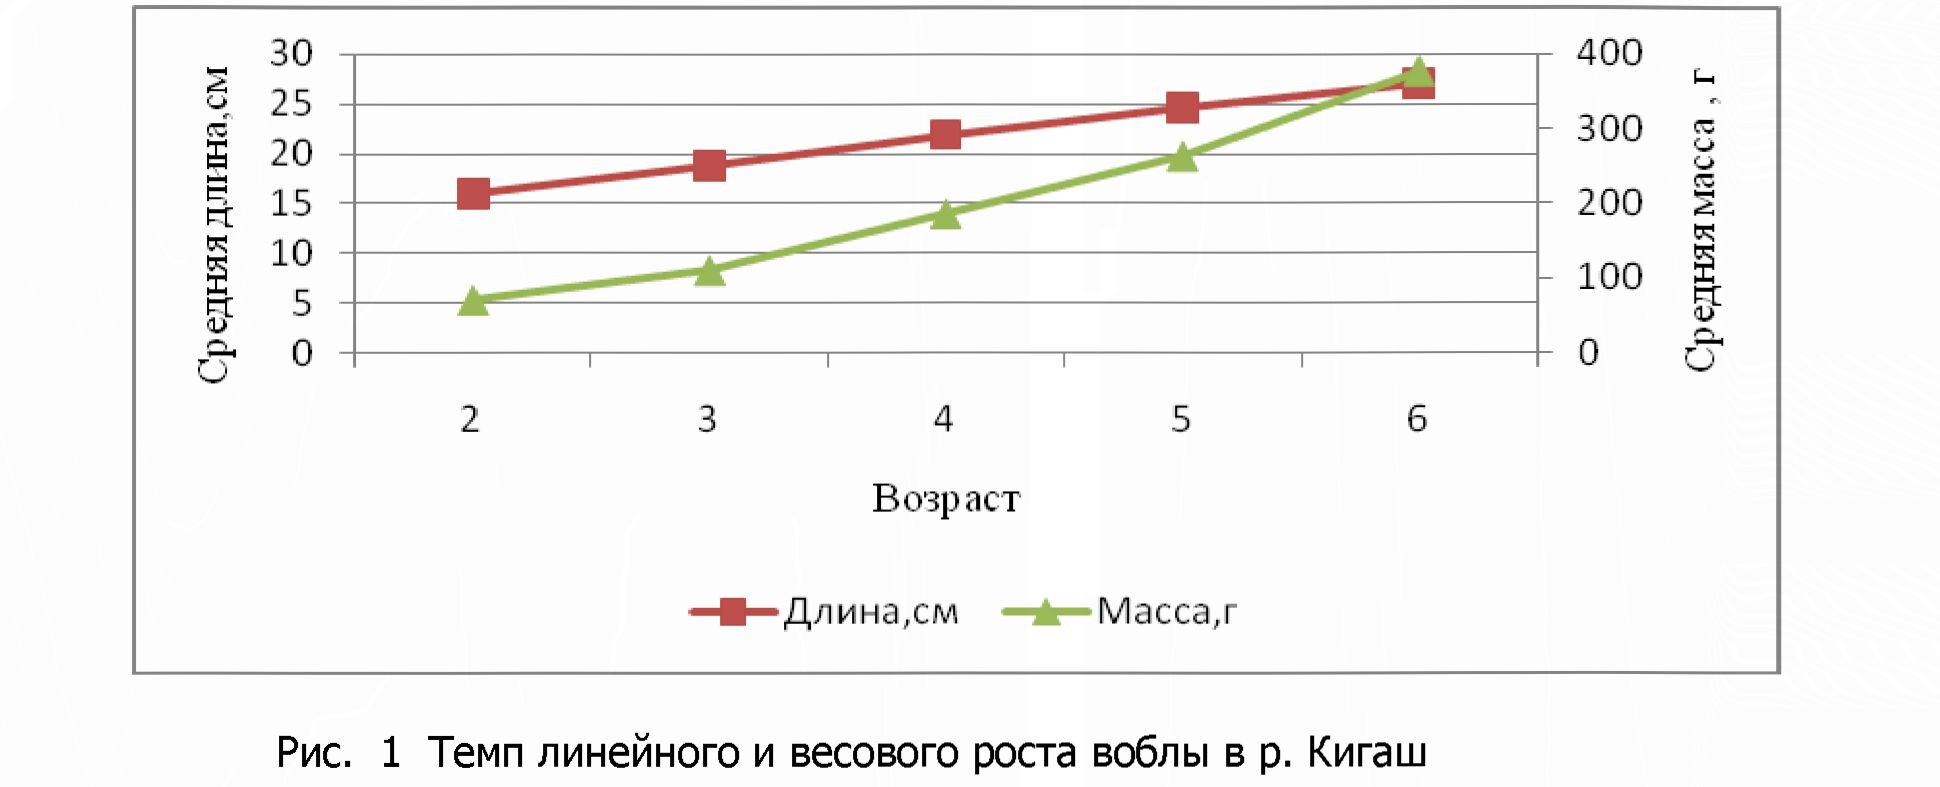 Динамика размерно-возрастной структуры нерестовой части популяции воблы в р.Кигаш